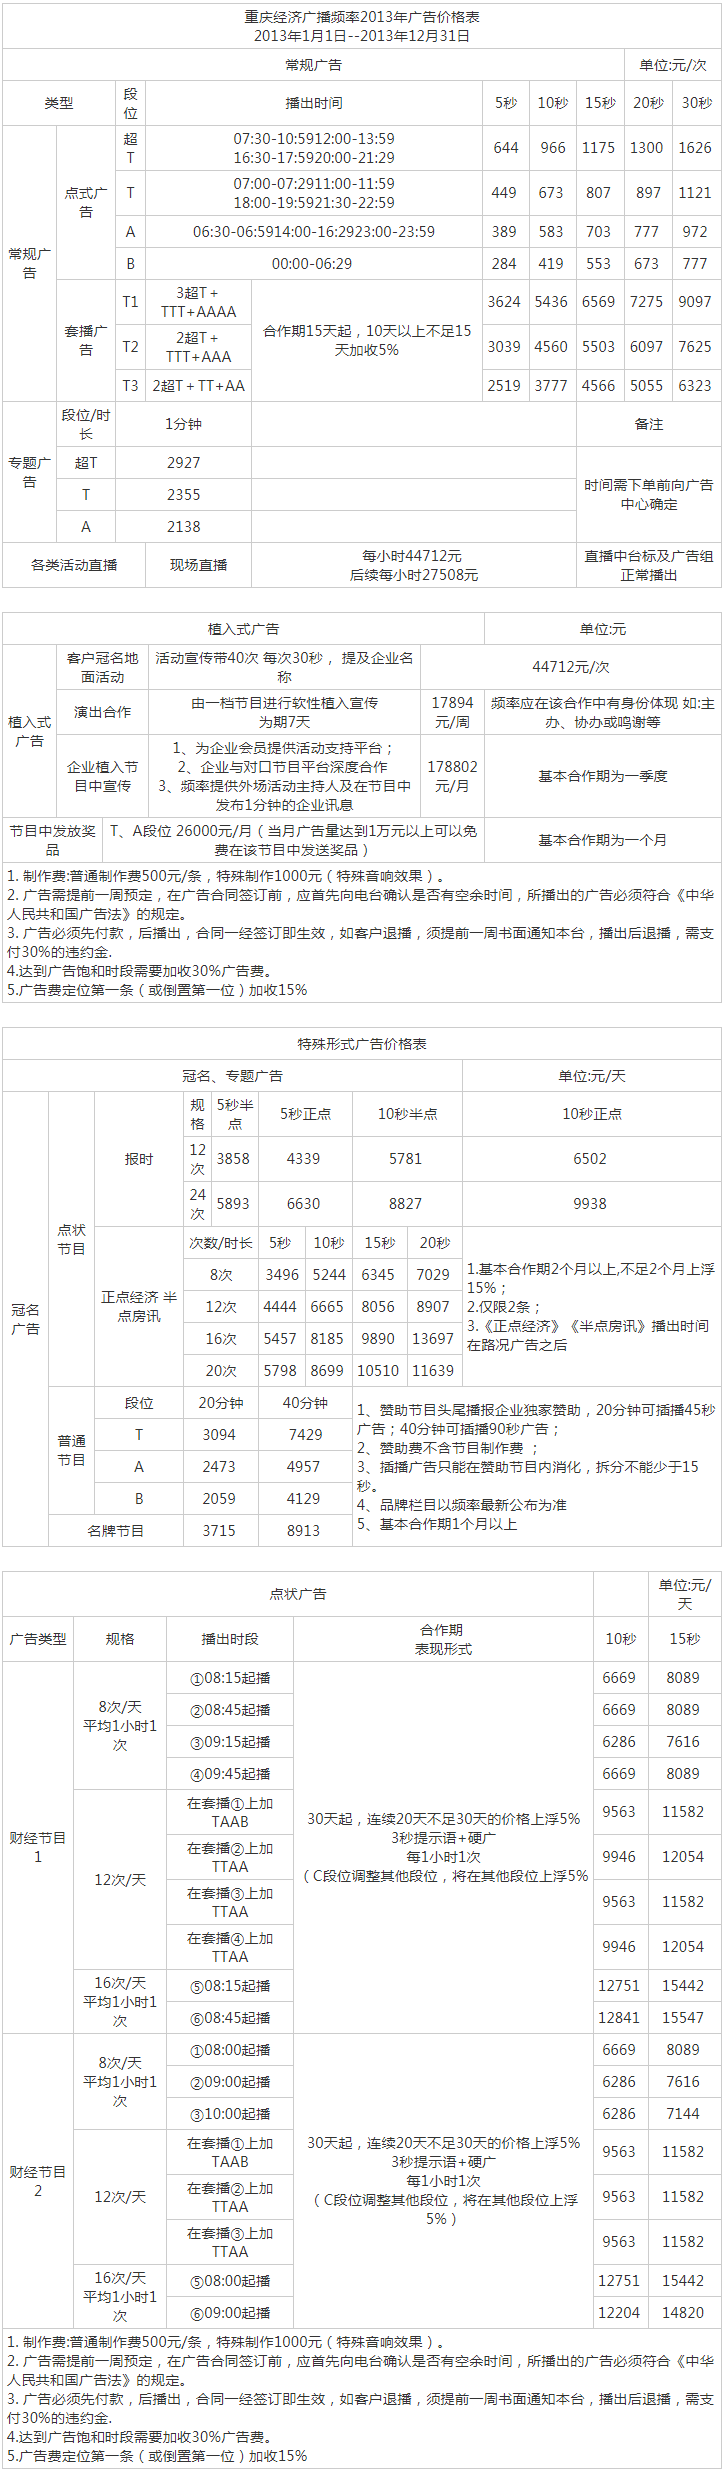 2013重庆人民广播电台经济频道 FM101.5广告报价表.png